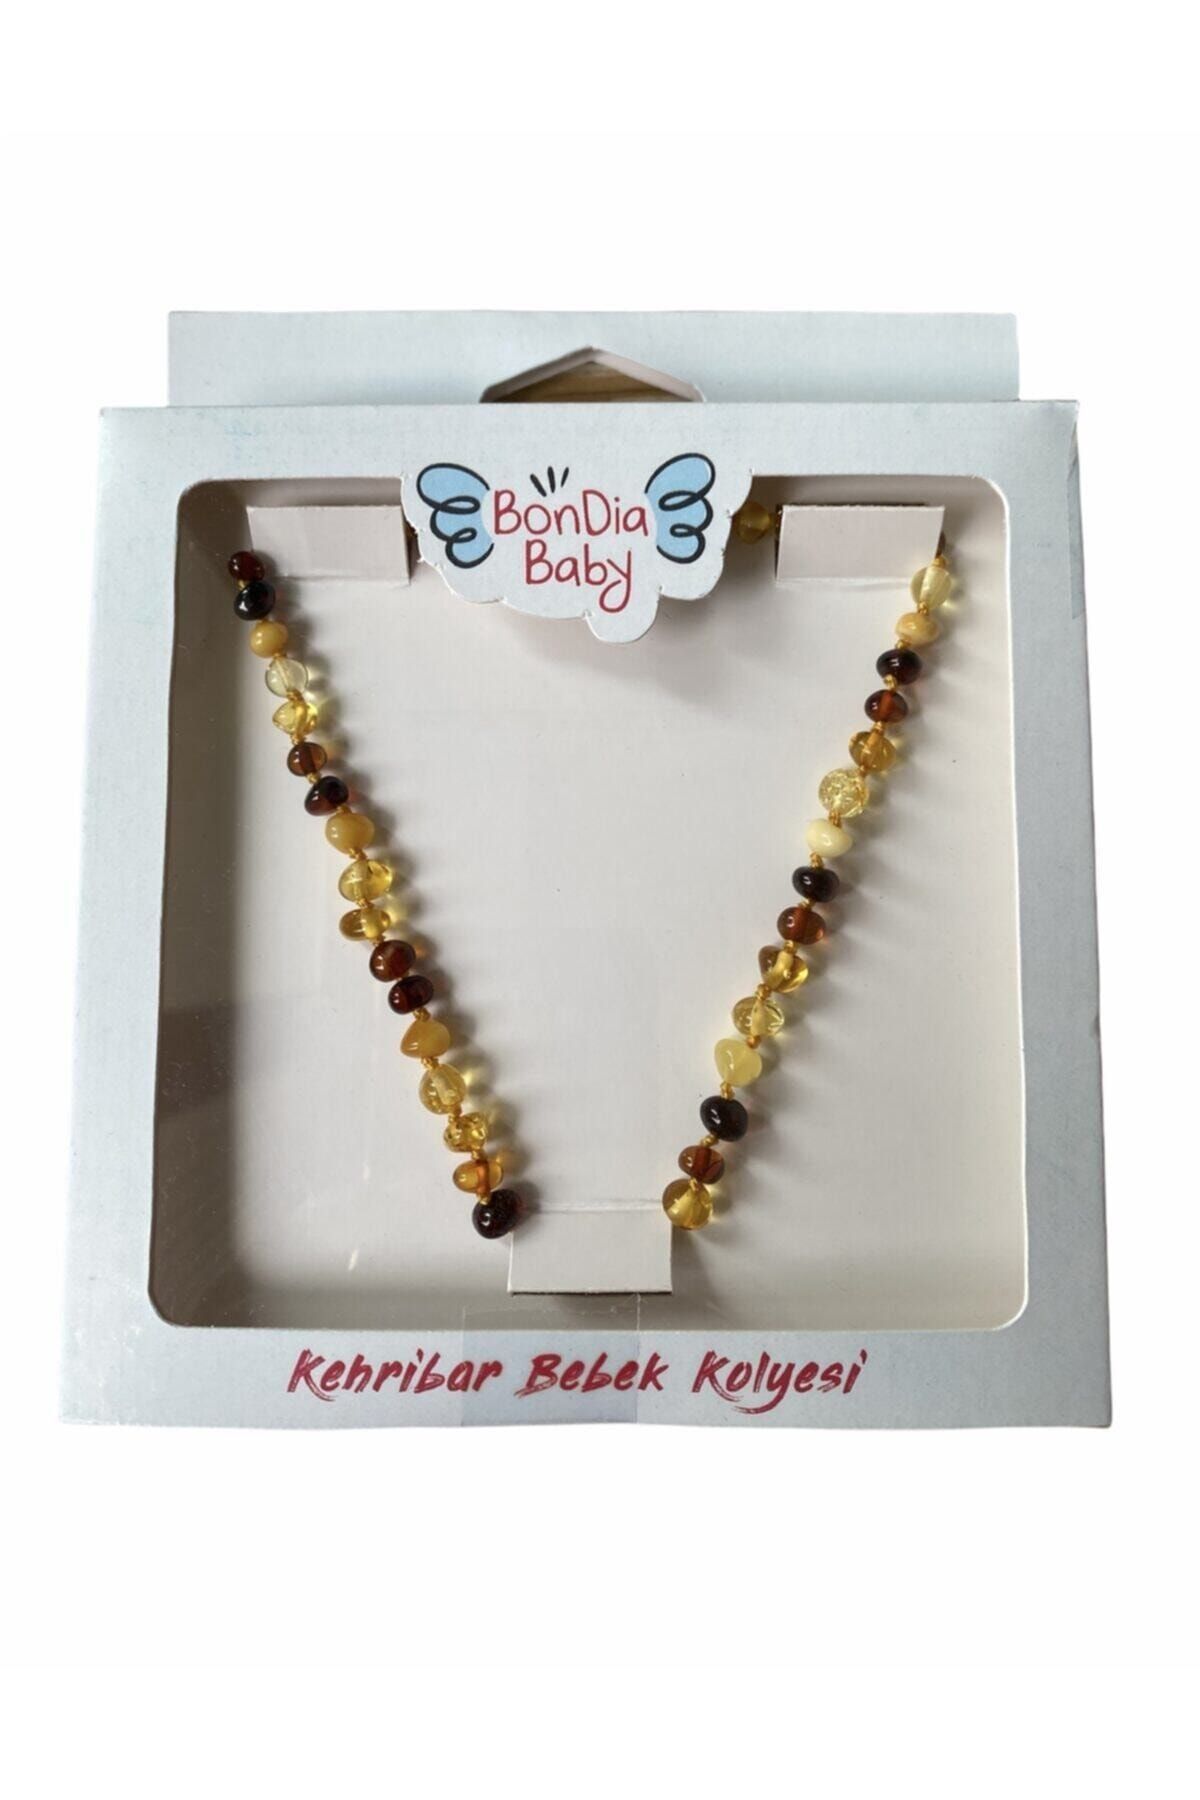 Bondia Baby Kehribar Multicolor Bebek Kolyesi Orijinal Sertifikalı